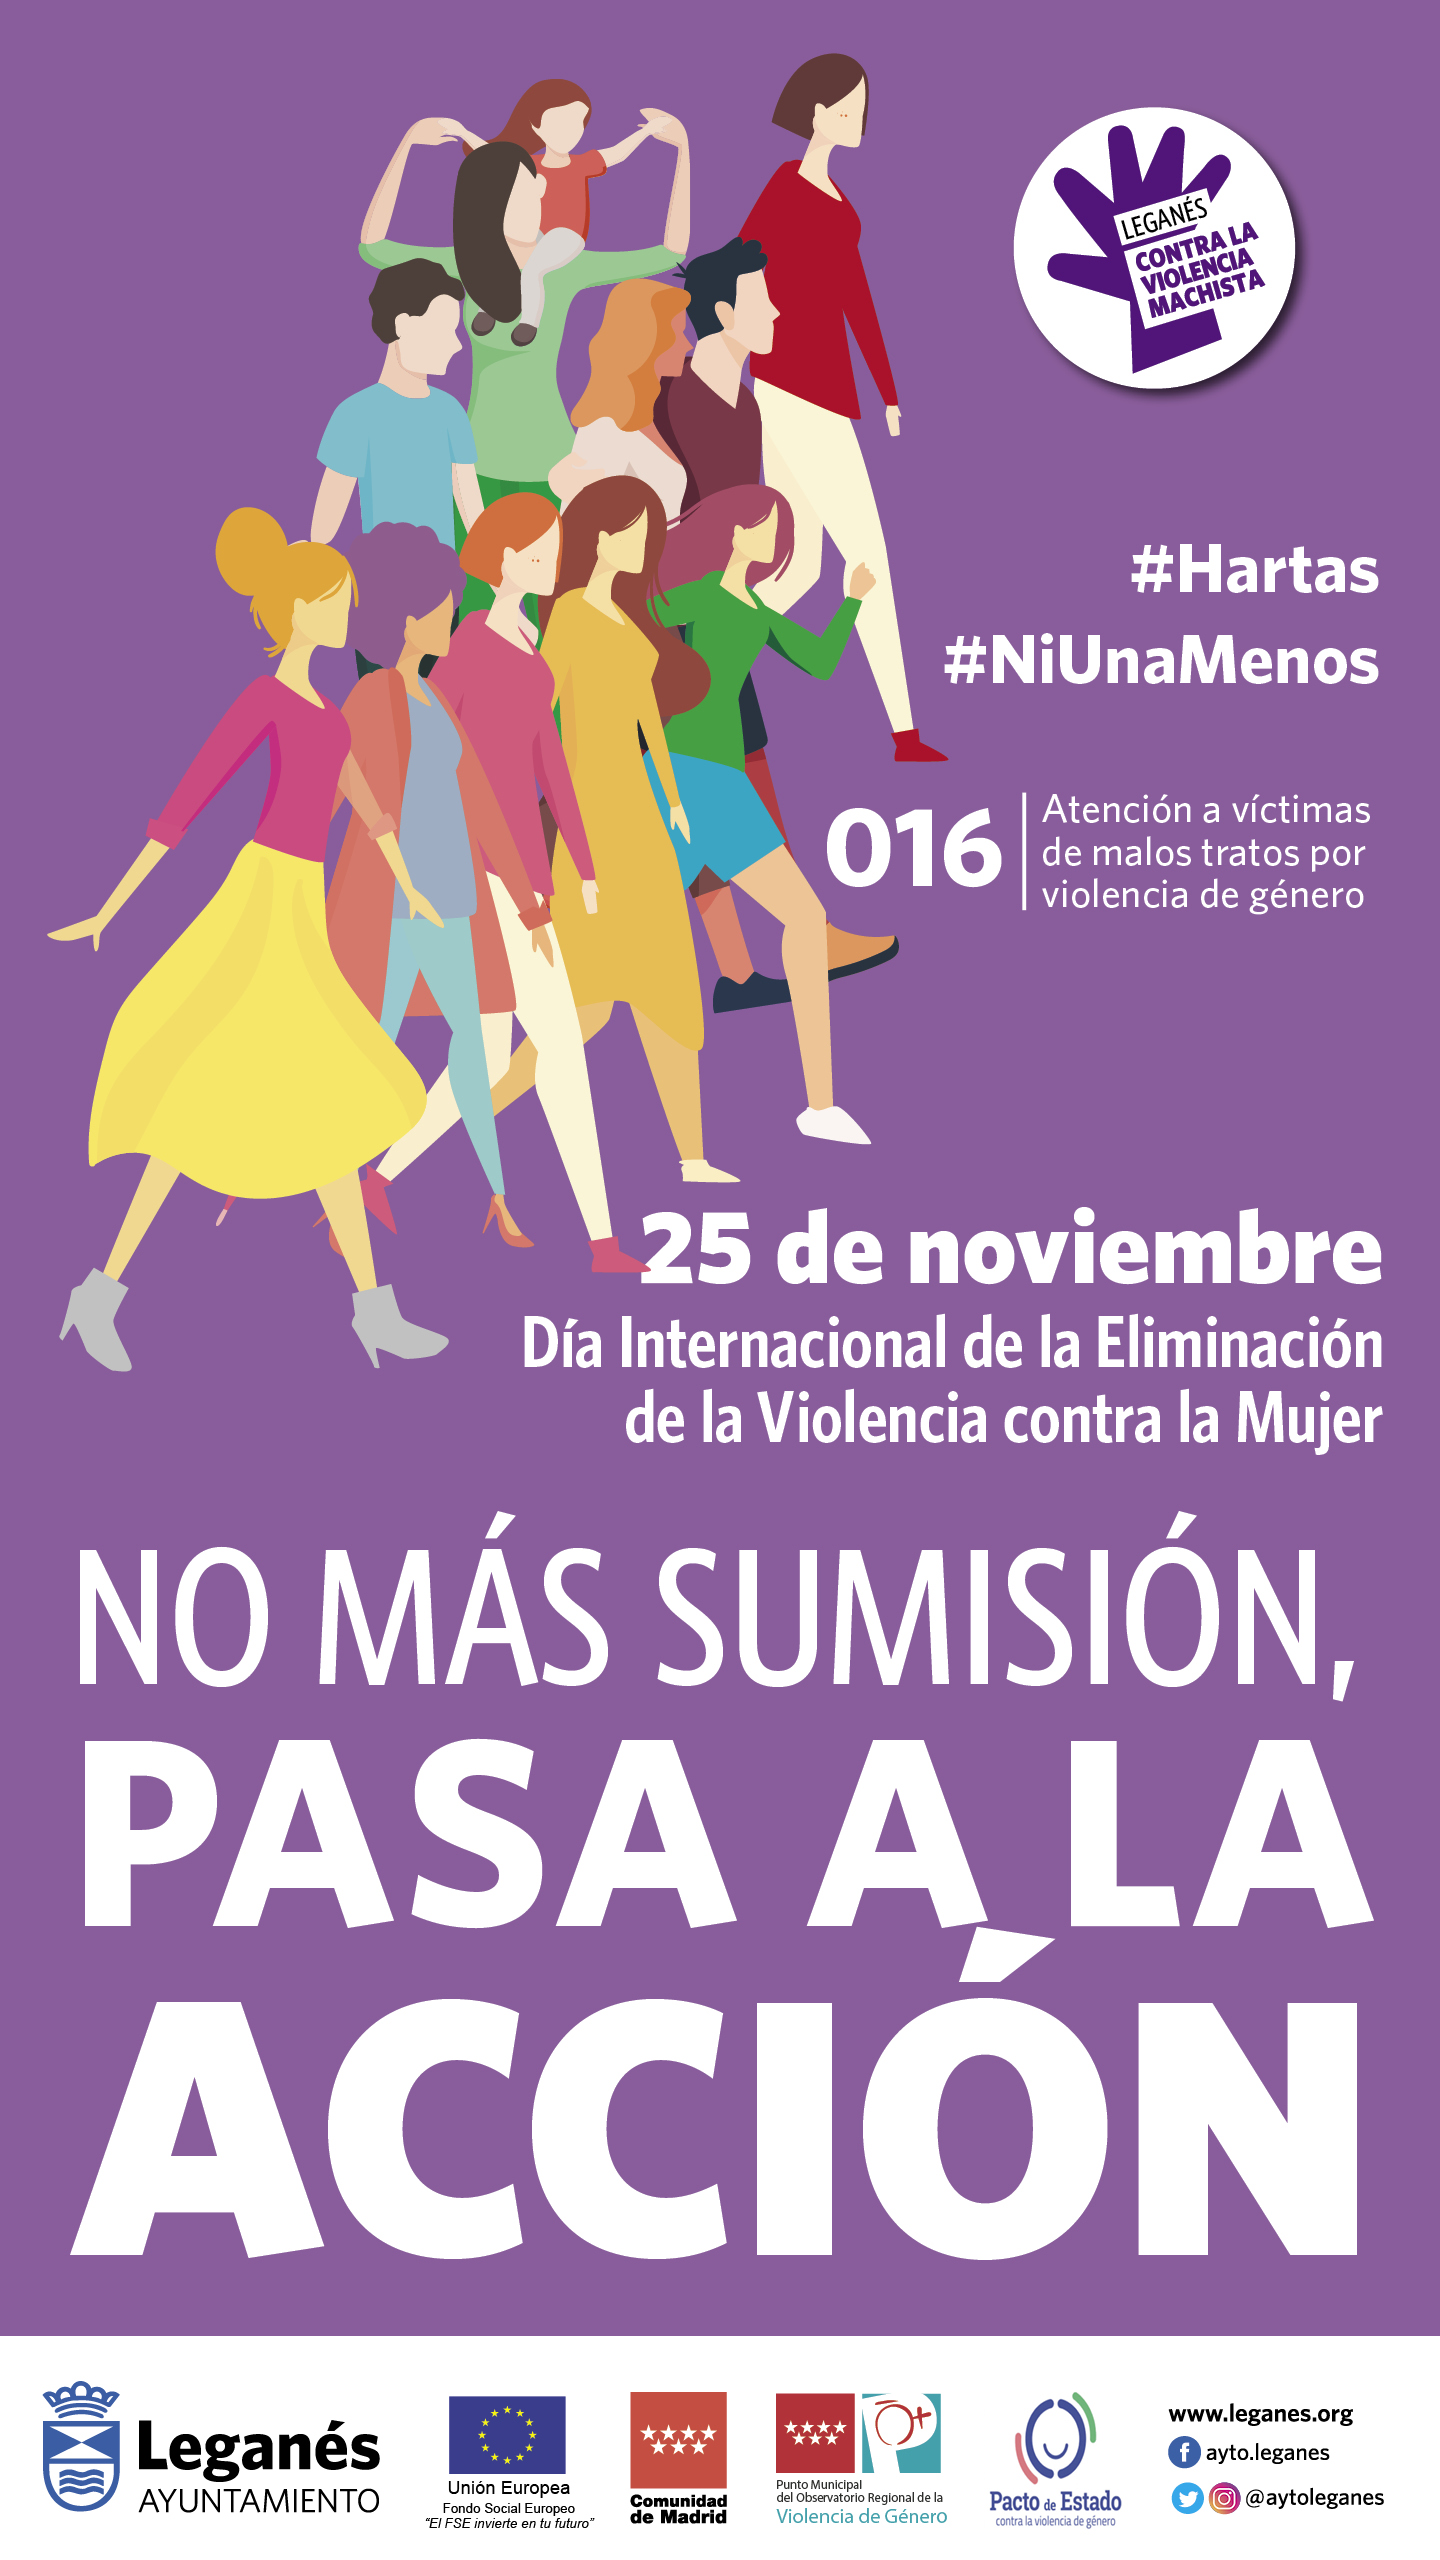 dia internacional de la eliminacion de la violencia contra la mujer 25 noviembre no mas sumisió, pasa a la acción